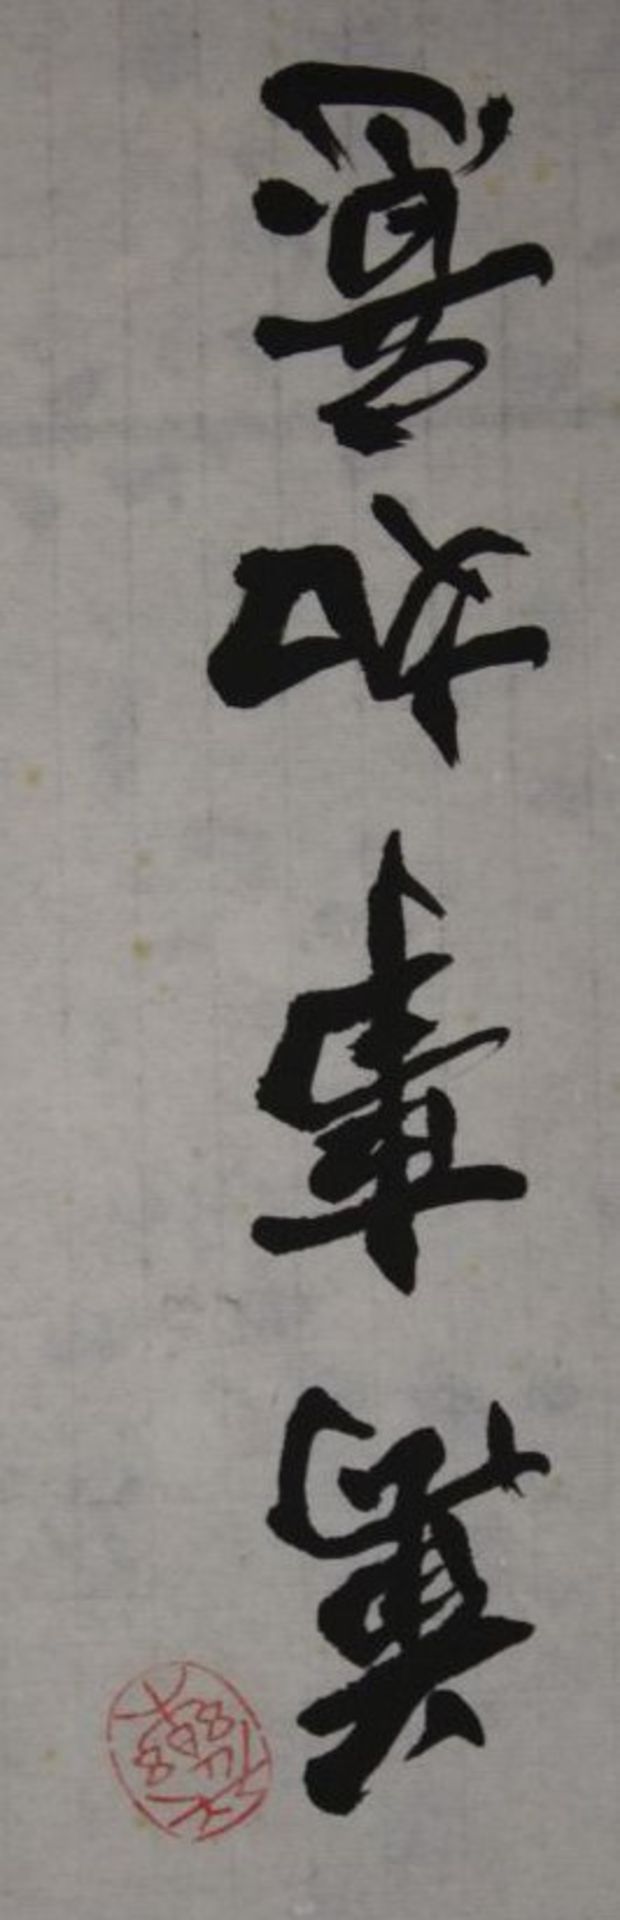 chin. Kaligraphie, ungerahmt, Blatt mit Läsuren, 67 x 34cm. - Bild 4 aus 4